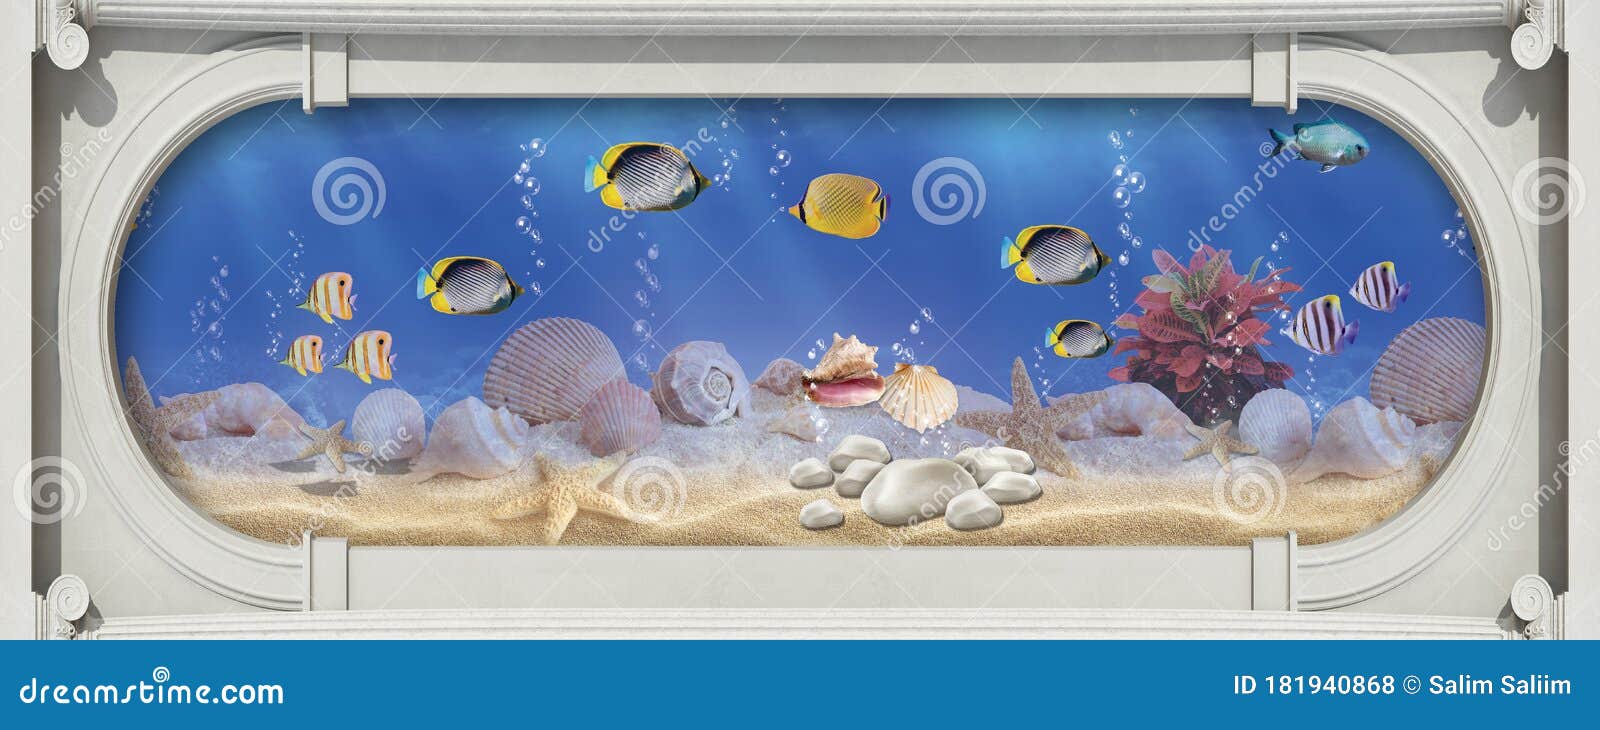 3d Aquarium Wallpaper For Walls Image Num 53